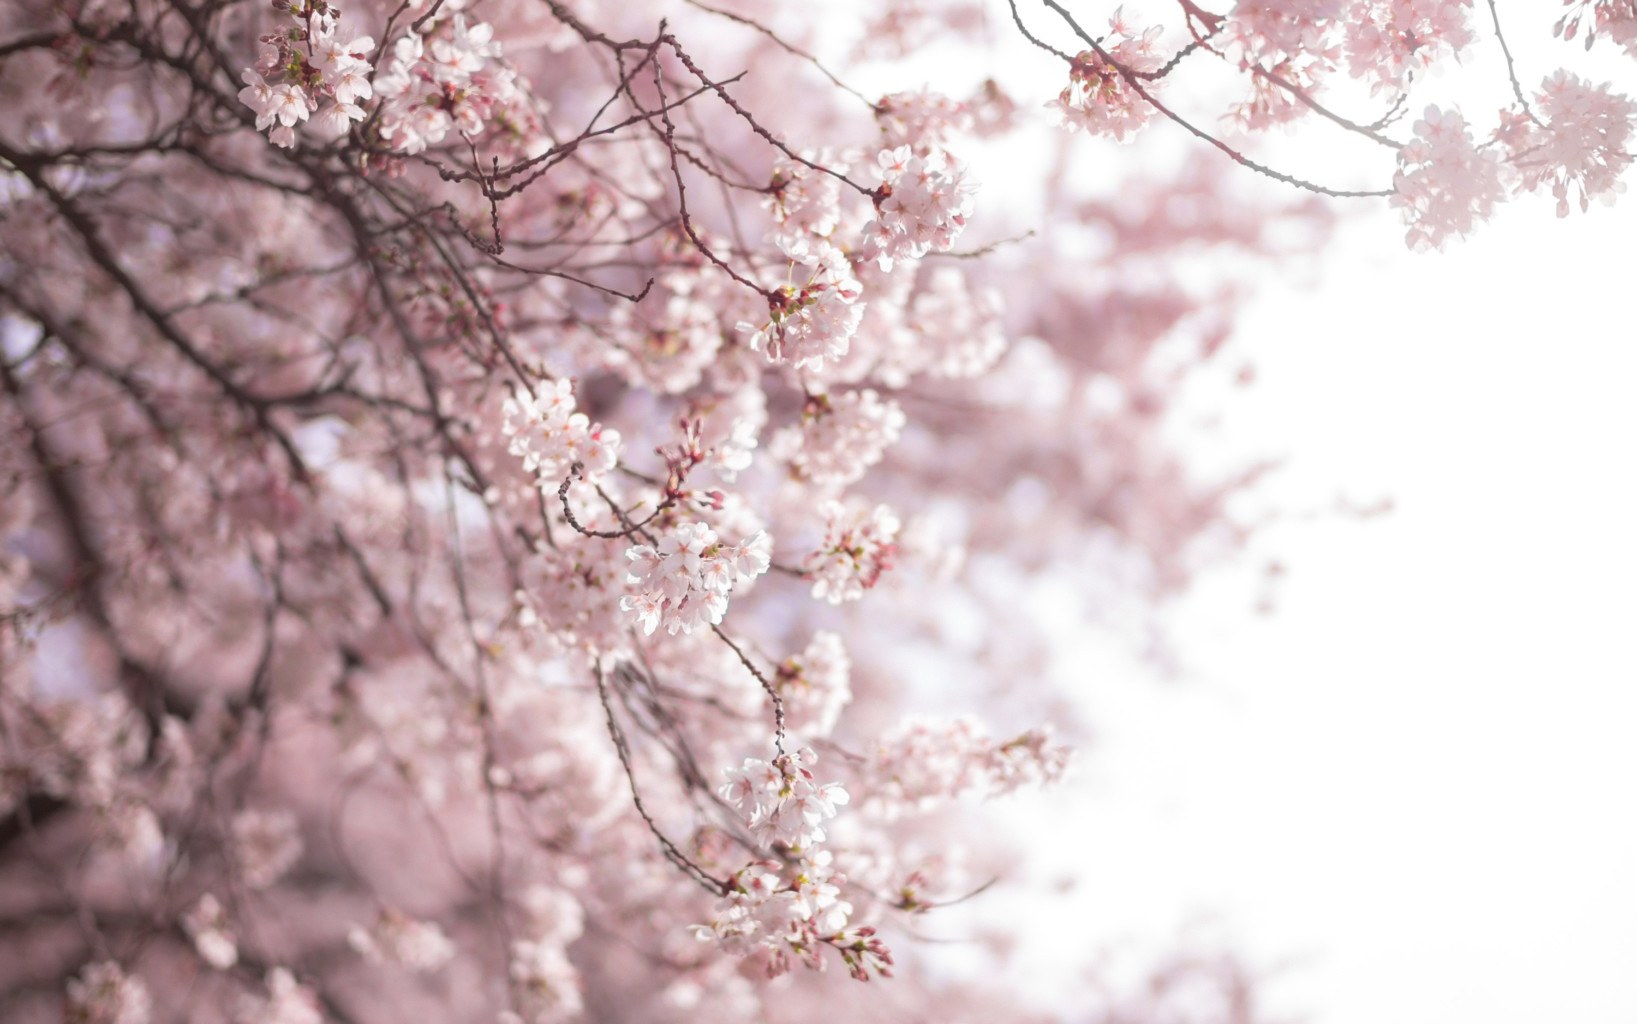 Cherry Blossoms @ UW